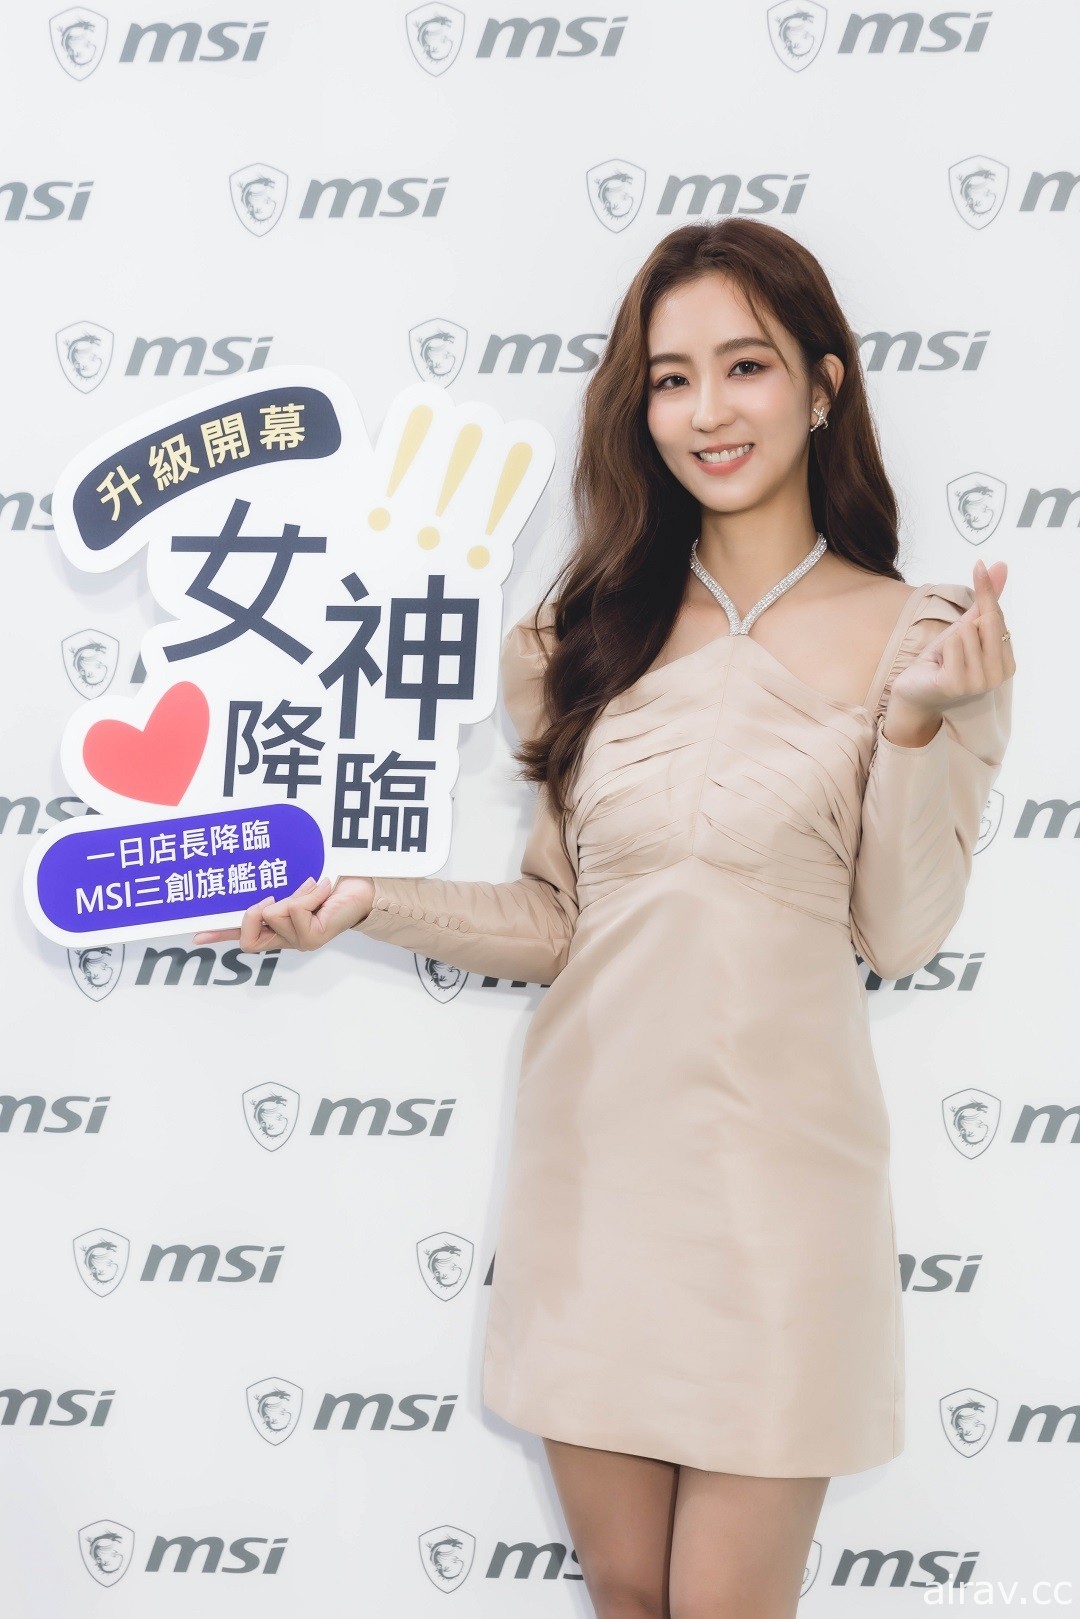 MSI 三创旗舰馆在台北三创升级登场 结合旗下电竞主力产品